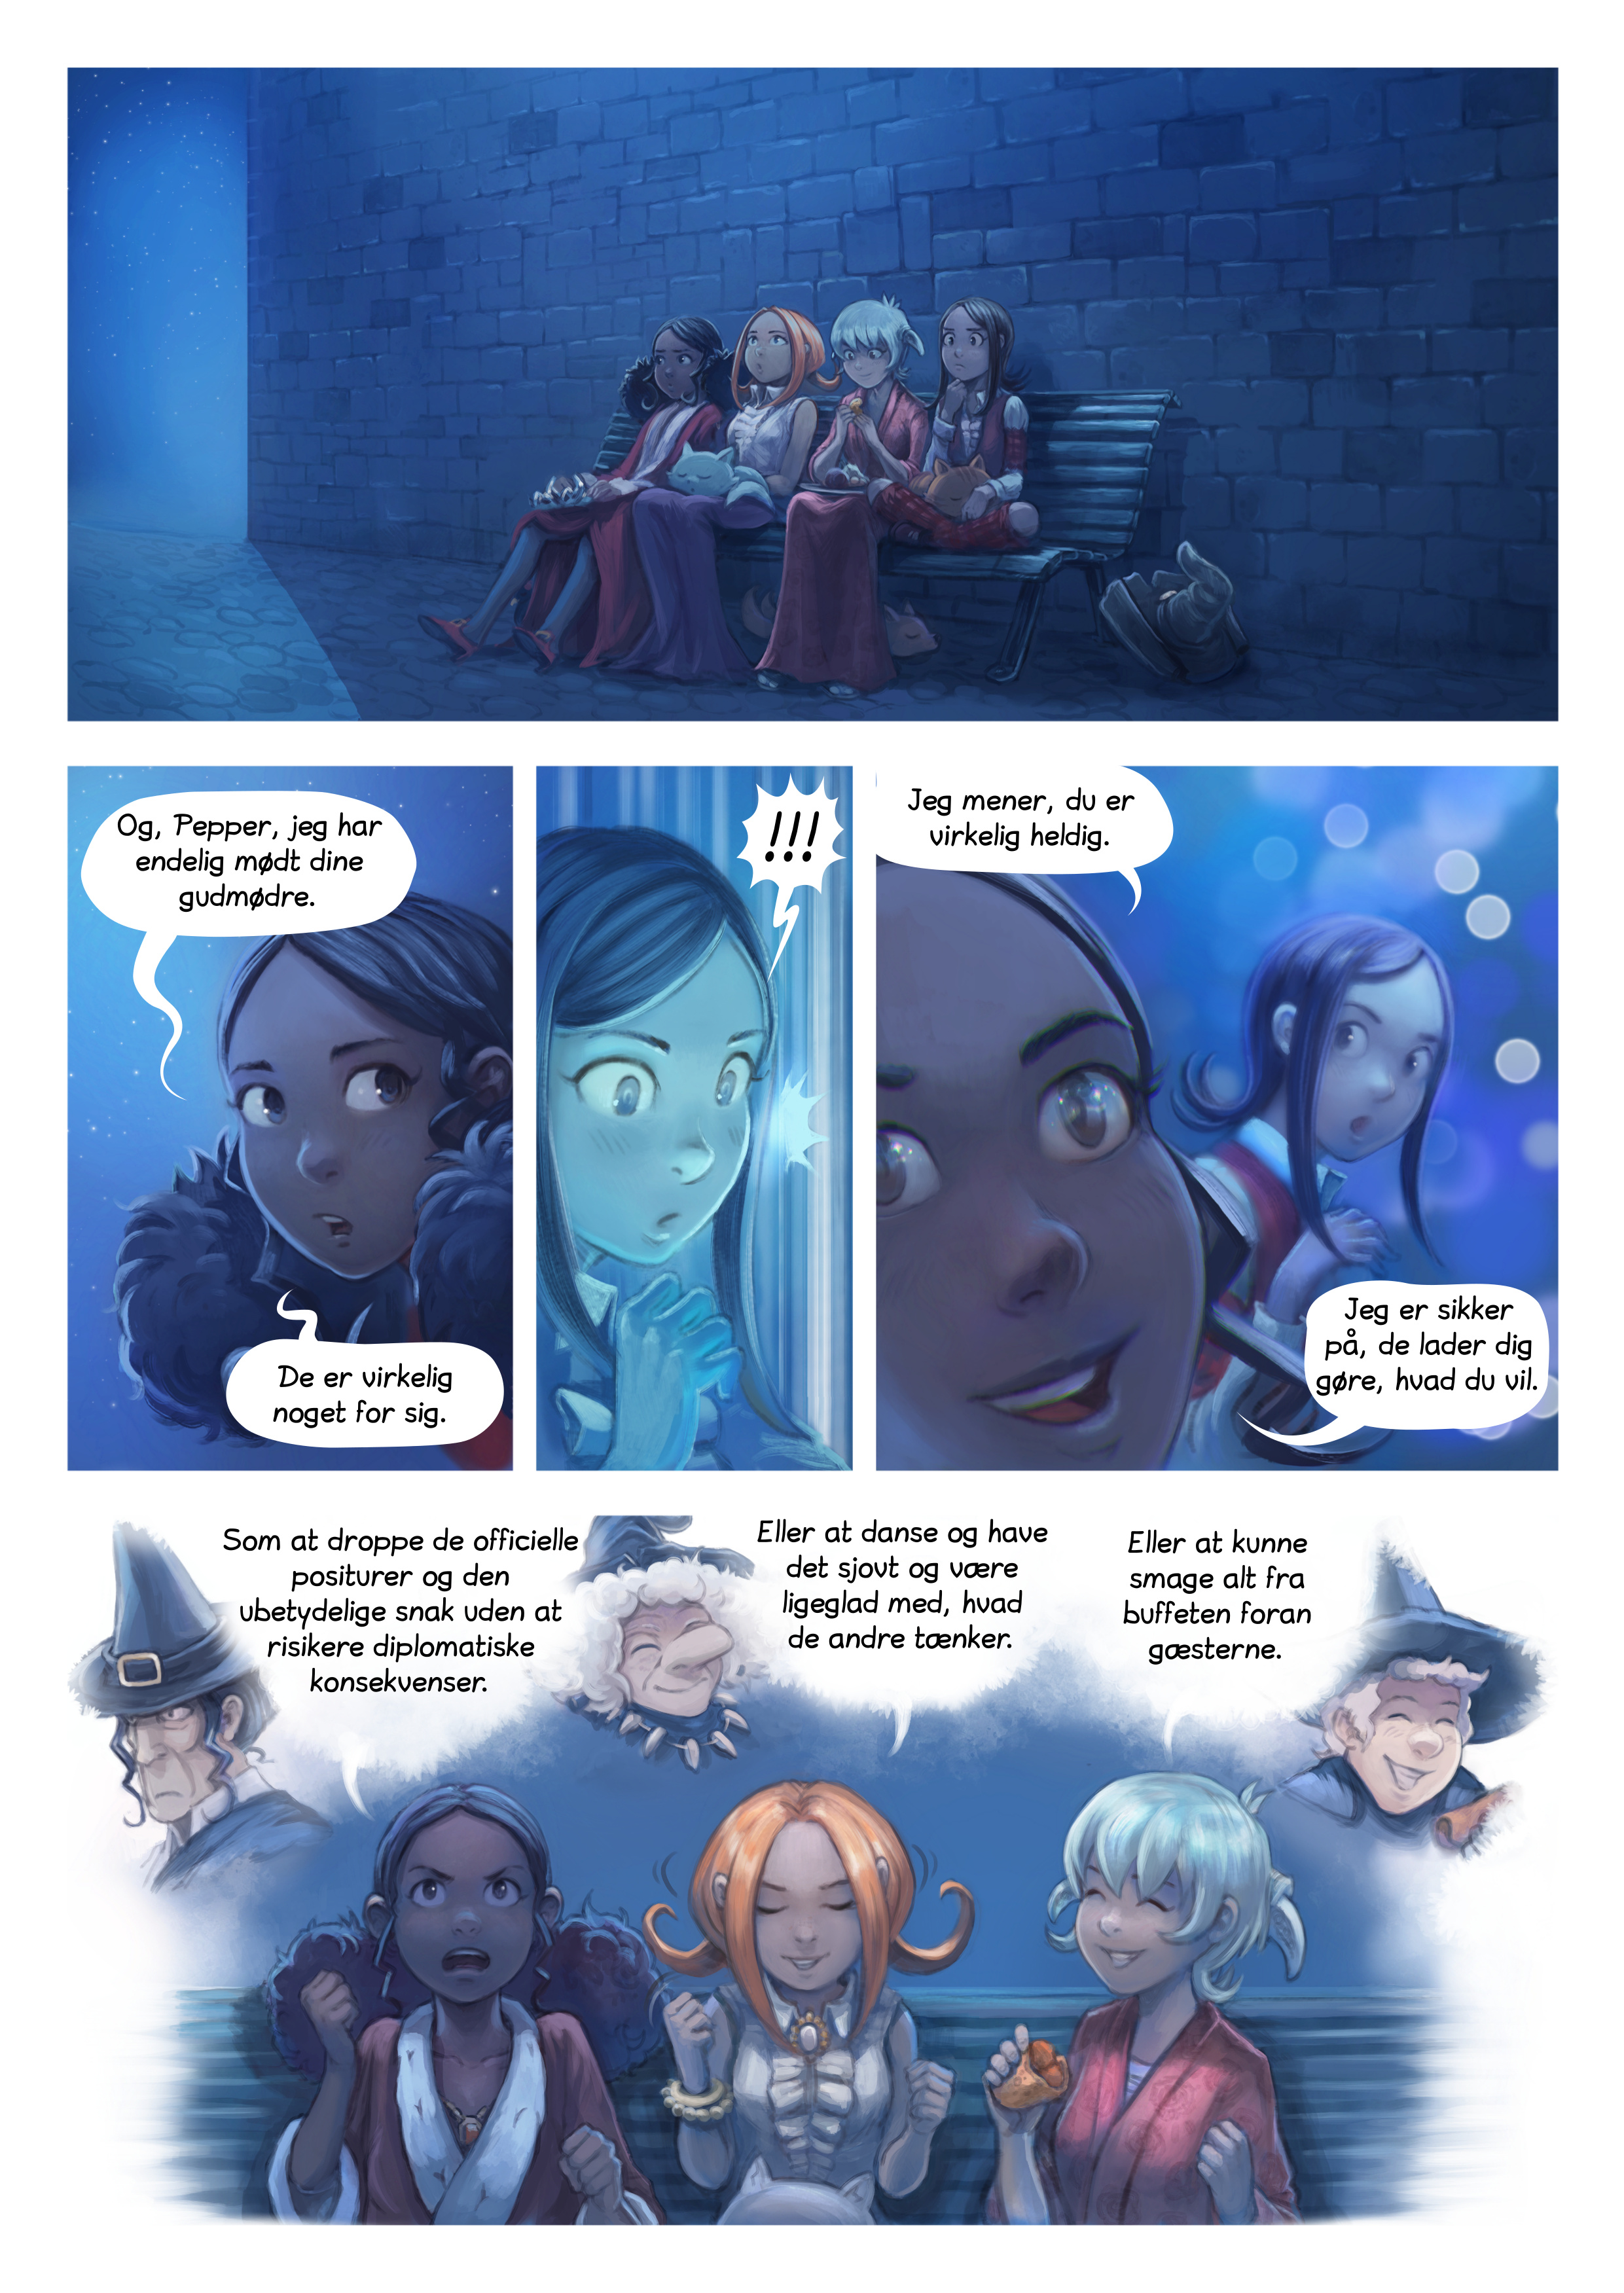 Episode 28: Festlighederne, Page 8